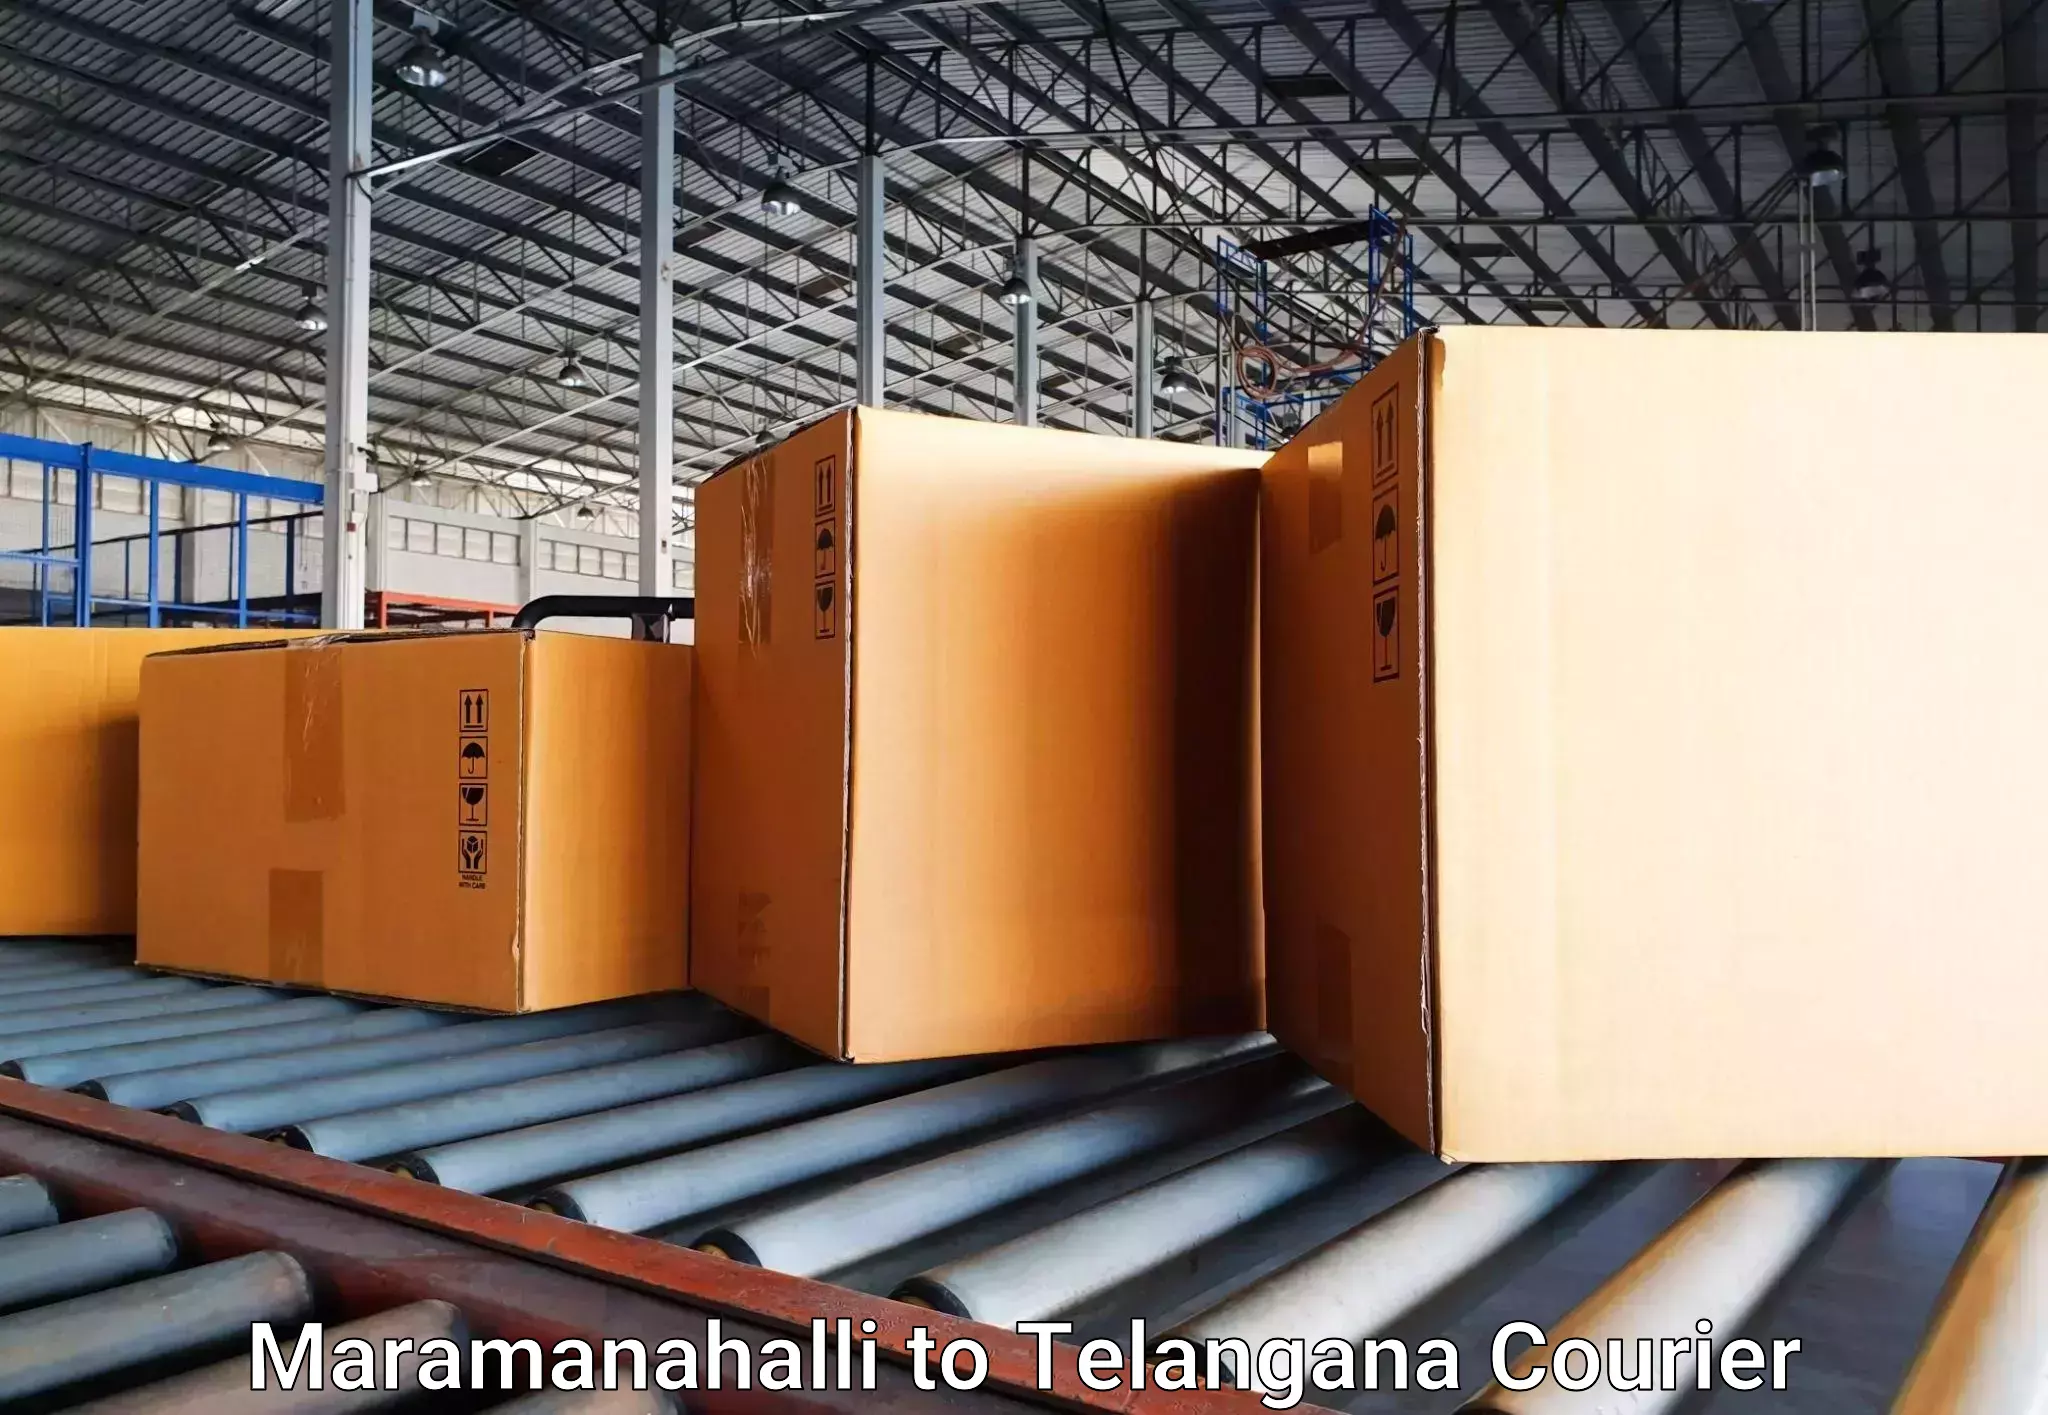 Luggage transport solutions Maramanahalli to Thungathurthi